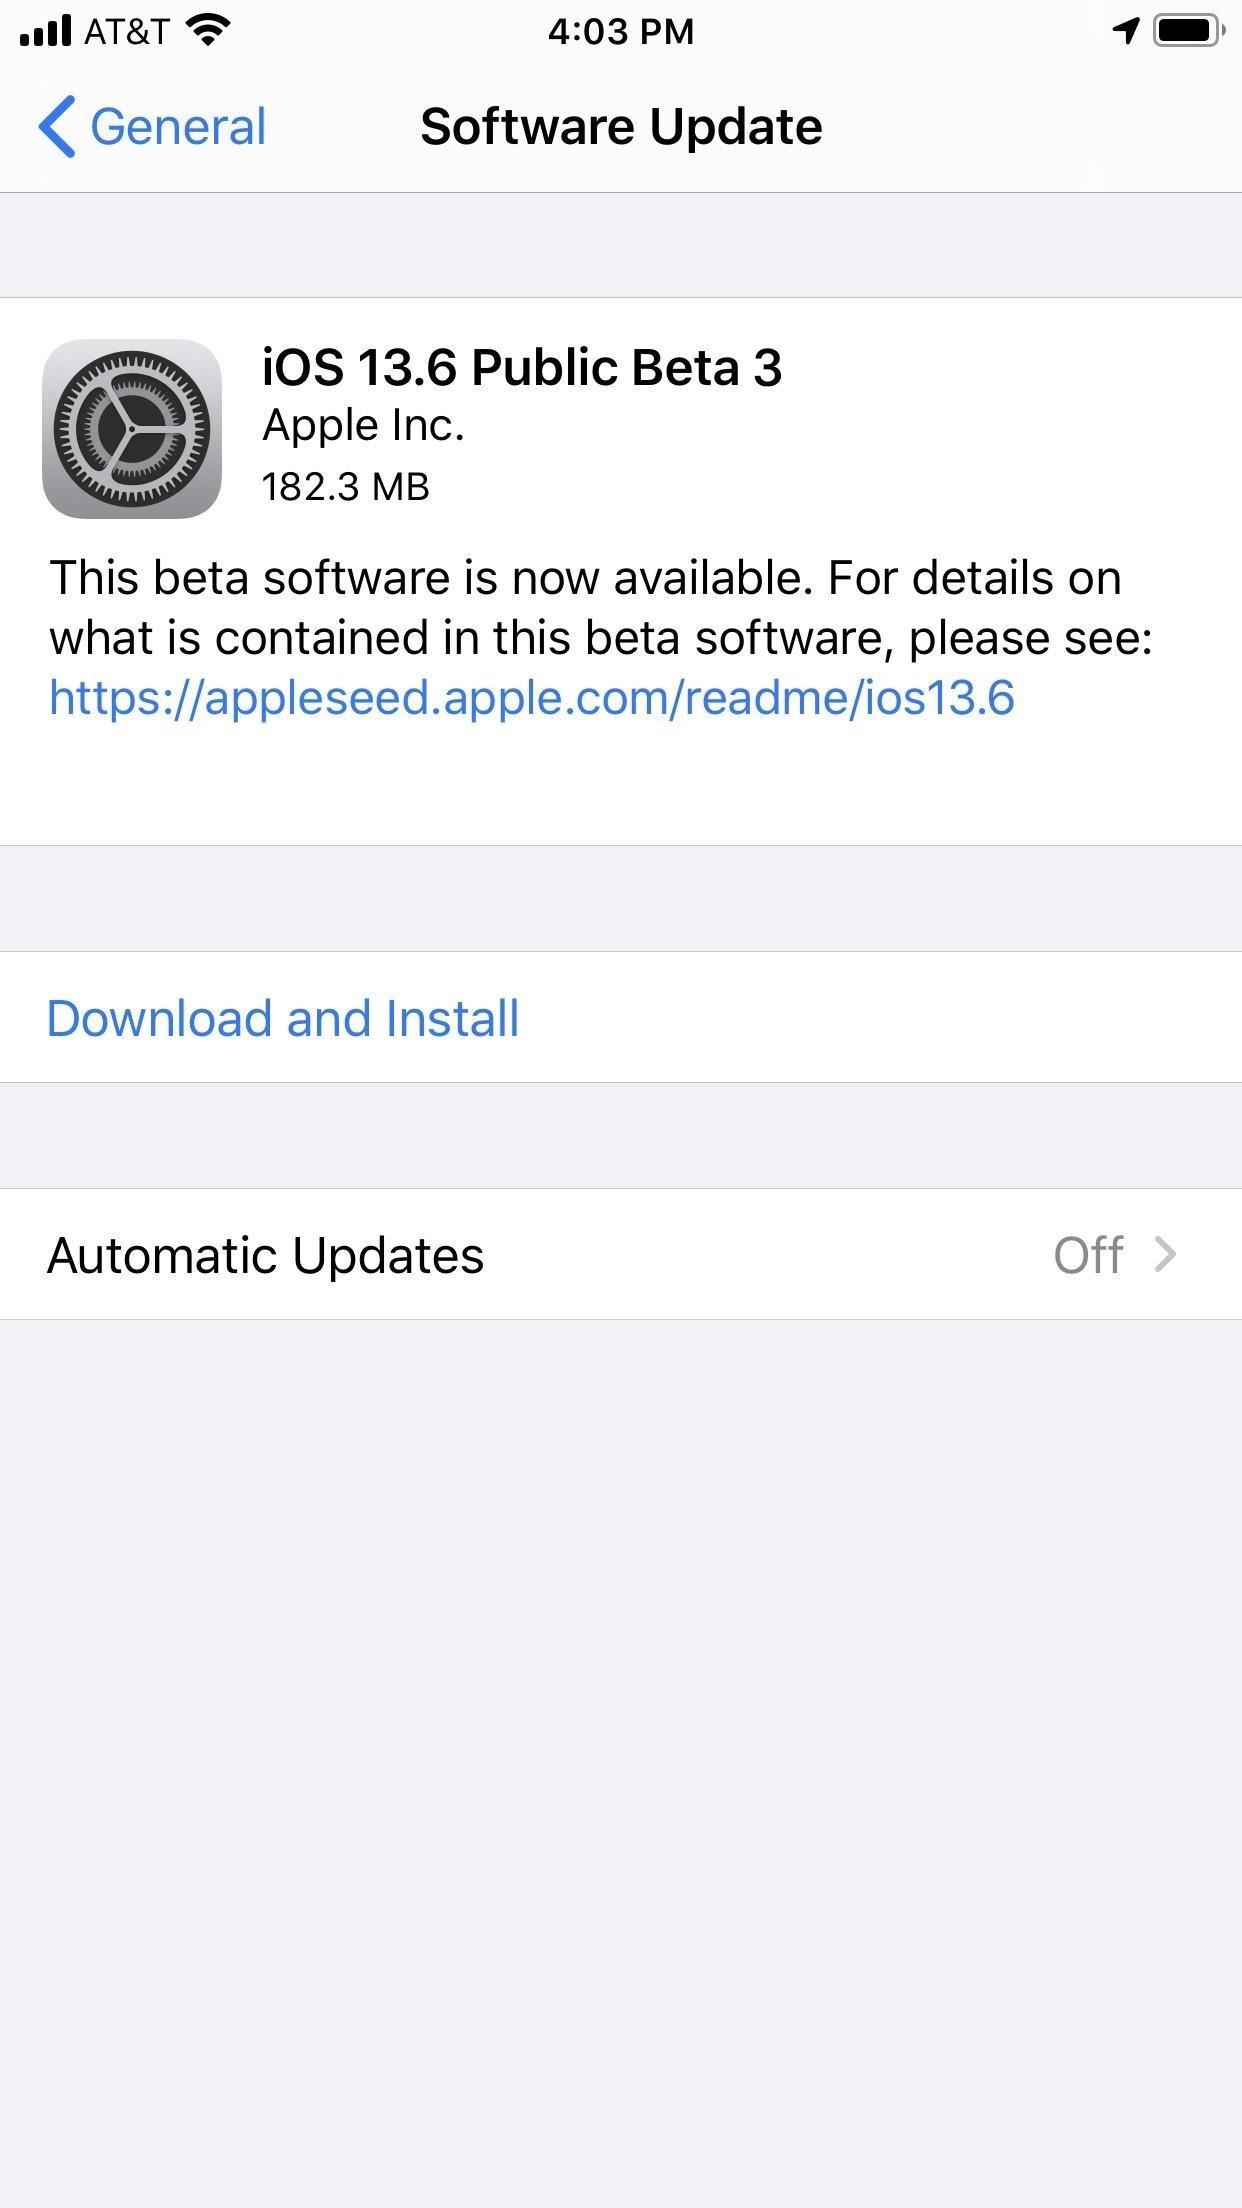 Apple's iOS 13.6 Public Beta 3 Adds Minor Updates for iPhone